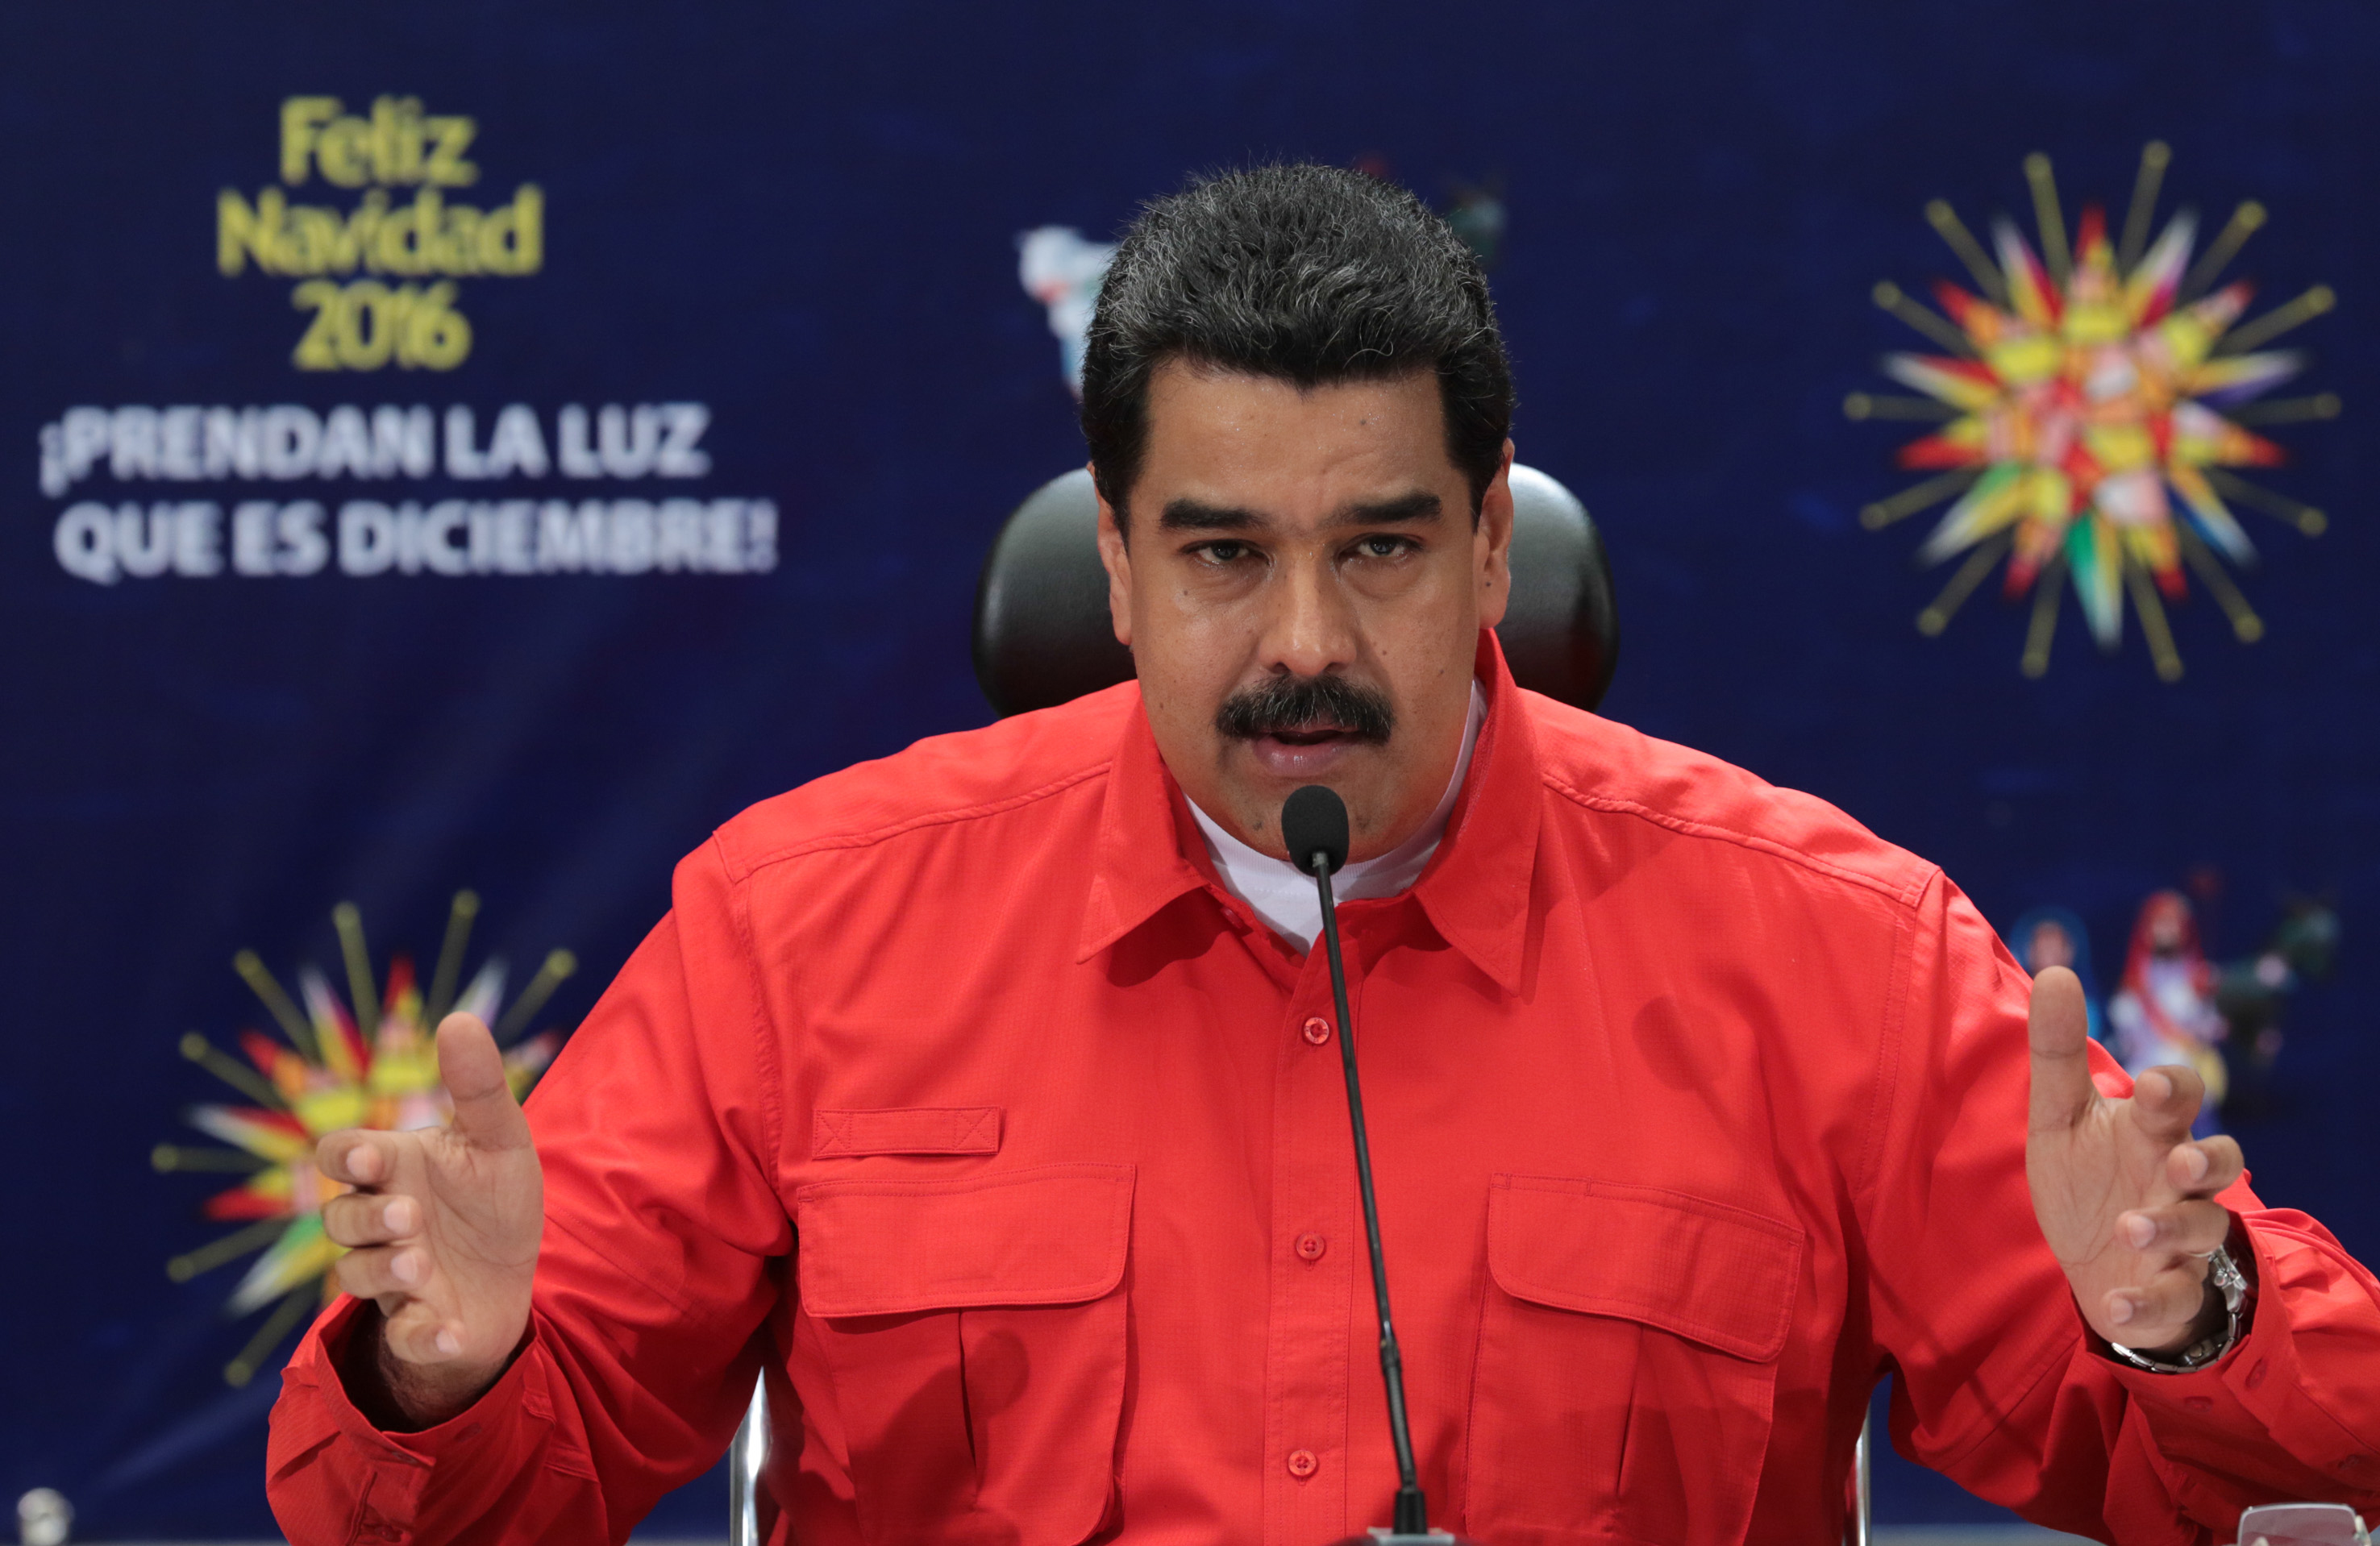 Minden jel arra mutat, hogy az inflációs csapdában vergődő Venezuela problémáit Maduro elnök csak súlyosbítja